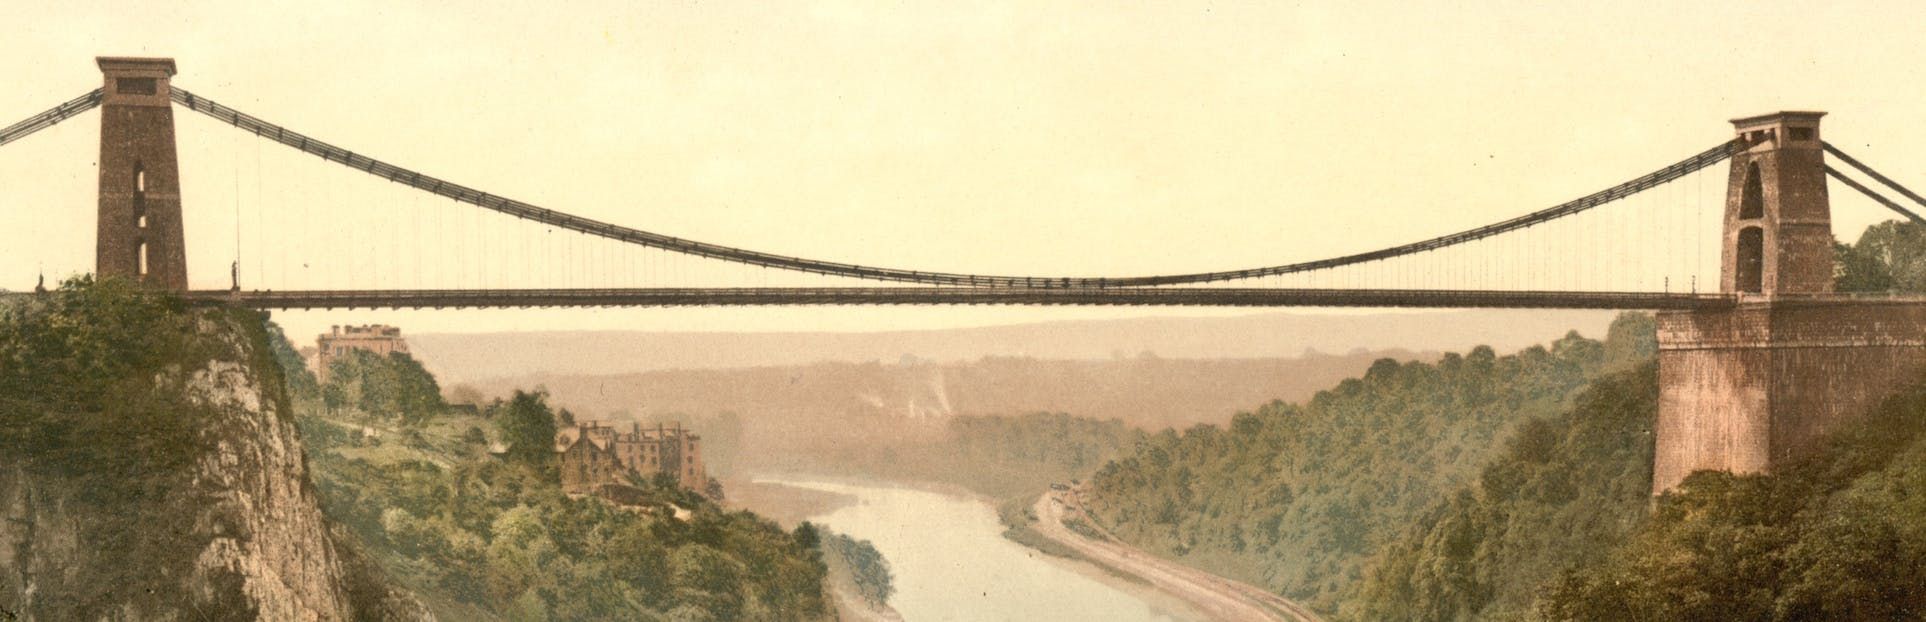 Imagen del tour: Descubra el barco y el puente de Brunel en un tour de audio autoguiado en Bristol